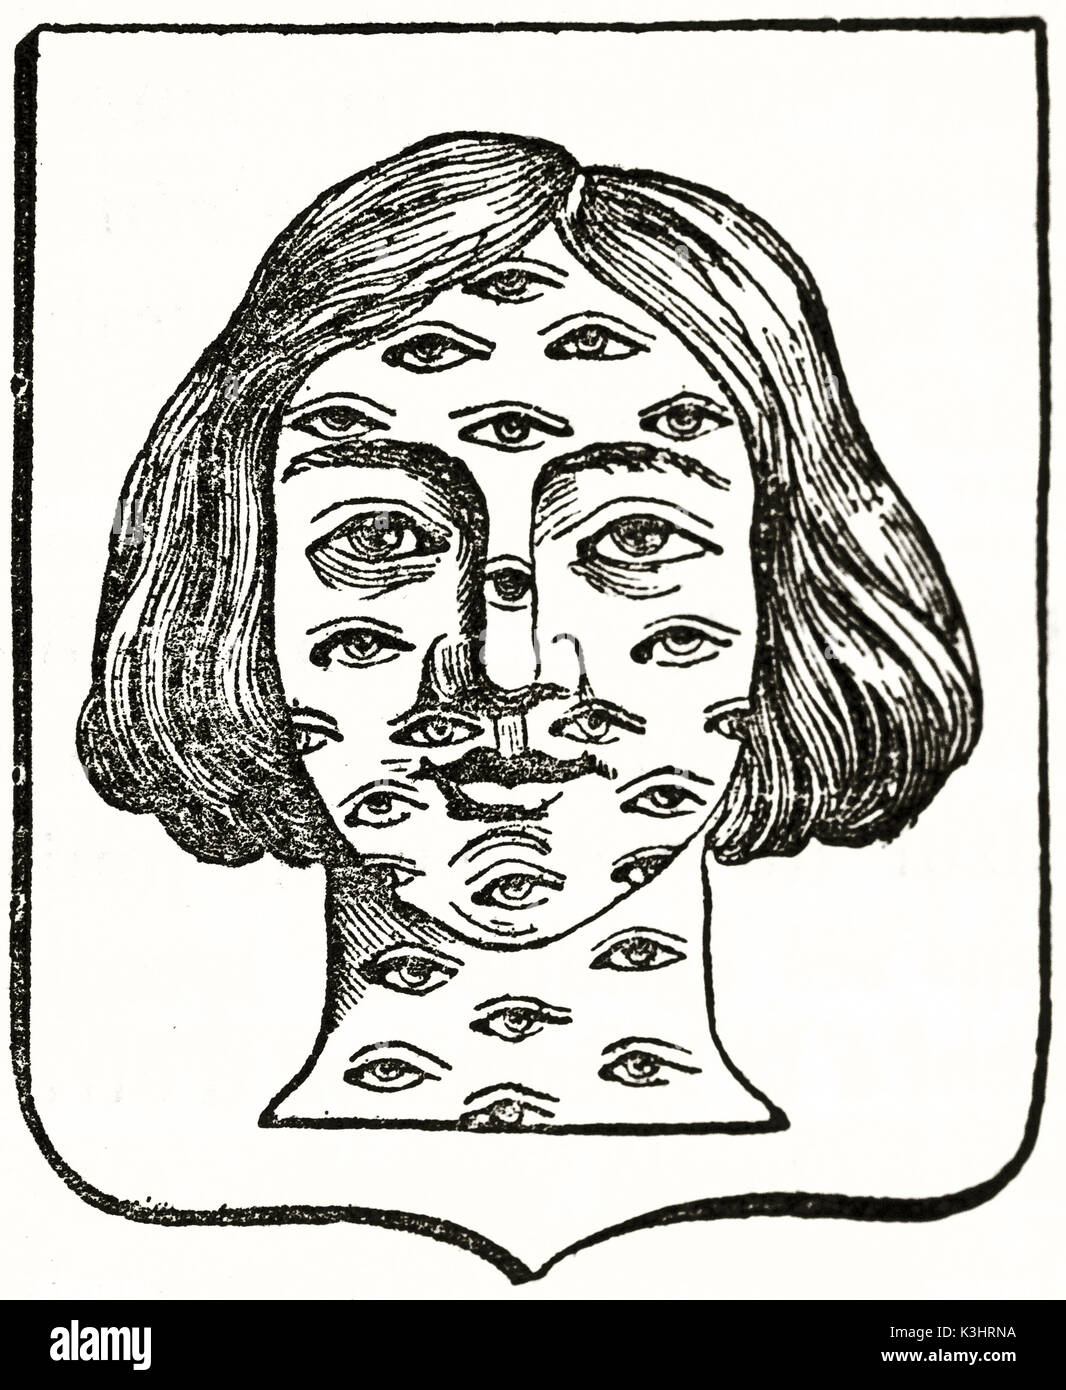 Alte graviert Reproduktion eines Wappen, die in einem Gesicht mit vielen Augen. Von unbekannter Autor, auf Magasin Pittoresque, Paris, 1838 veröffentlicht. Stockfoto